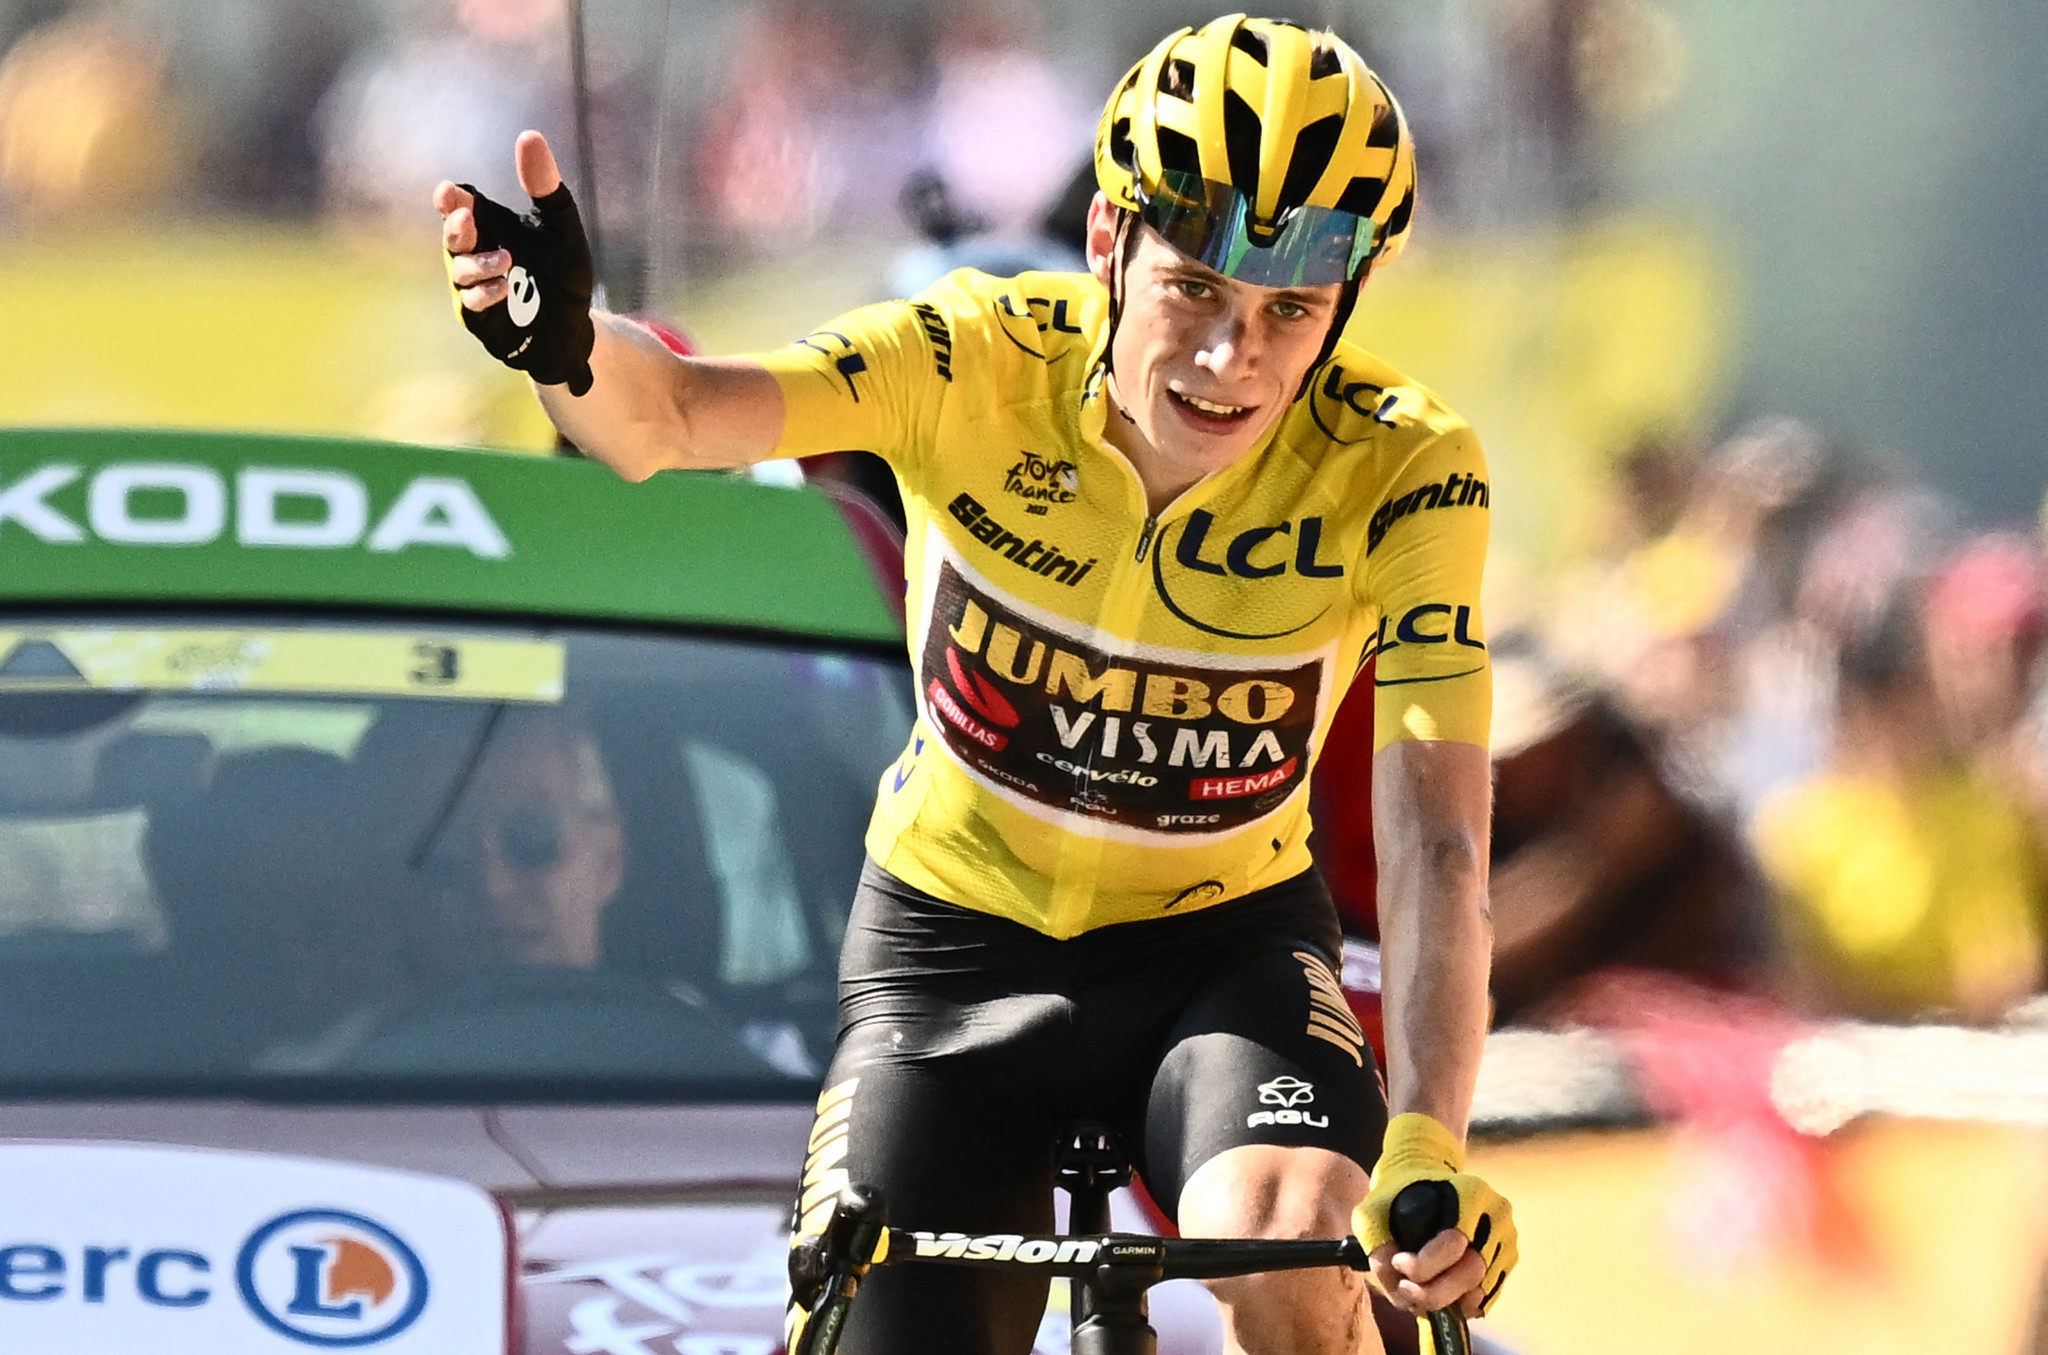 Vingegaard extends Tour de France advantage with late surge on stage 18